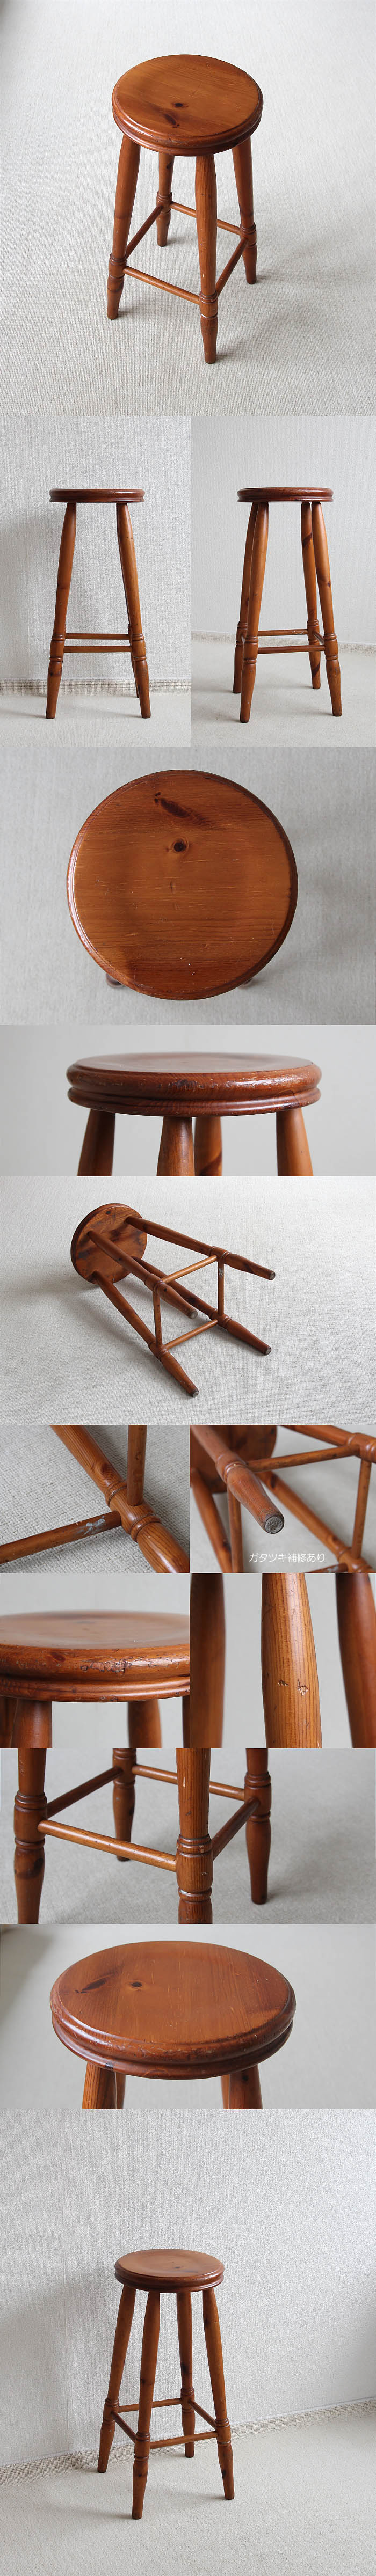 イギリス ヴィンテージ ハイスツール 木製椅子 丸イス カウンターチェア 家具 V-267